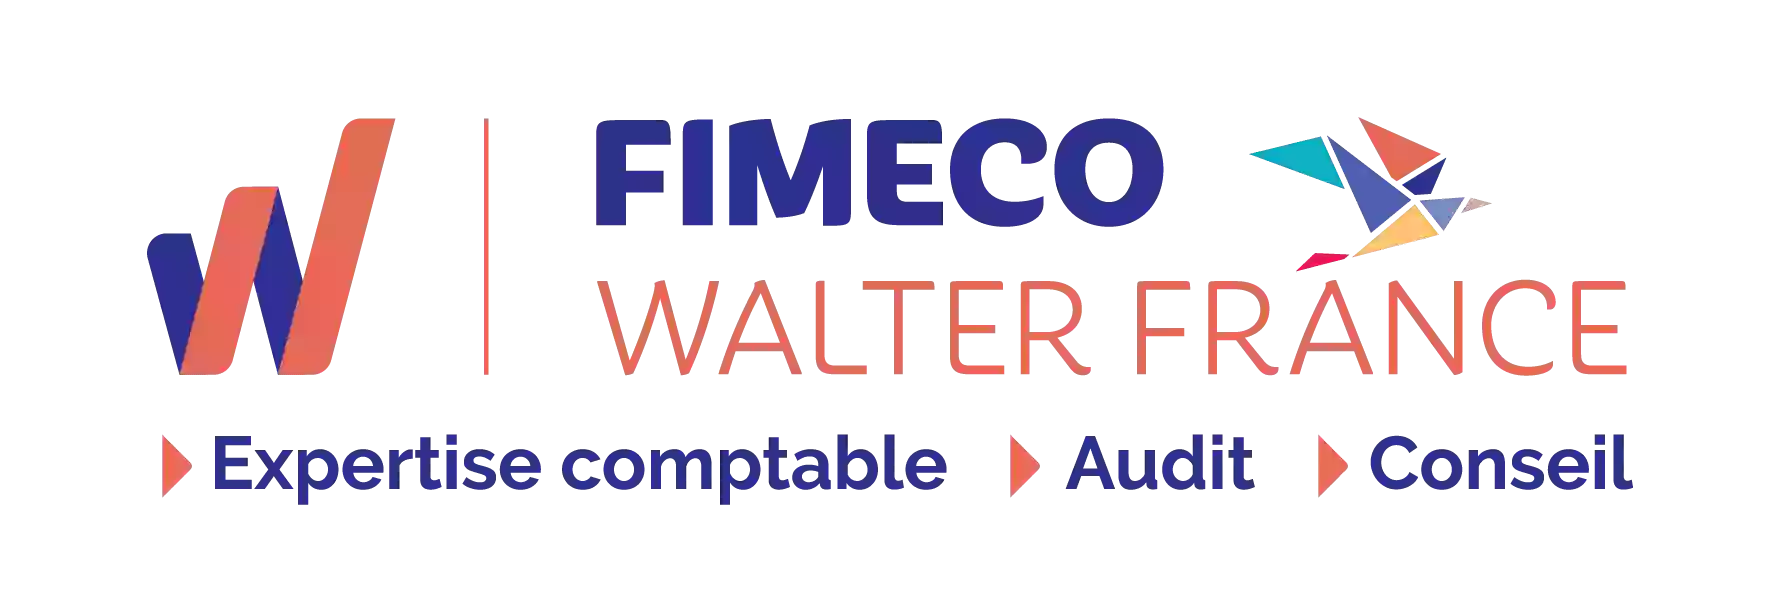 FIMECO Walter France - Saintes Cité Entrepreneuriale